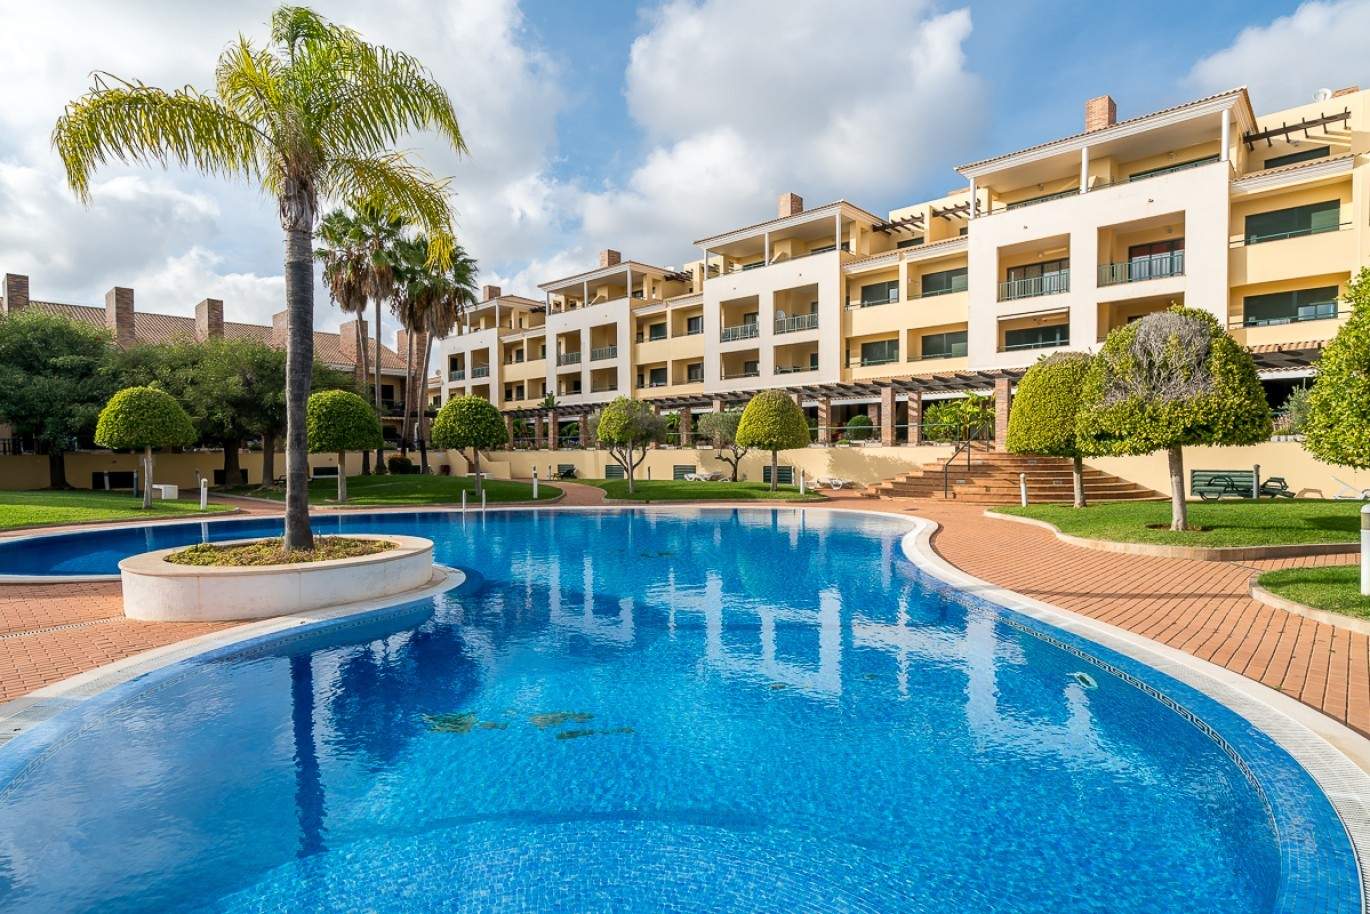 Venda de apartamento com piscina em Vilamoura, Algarve, Portugal_87867